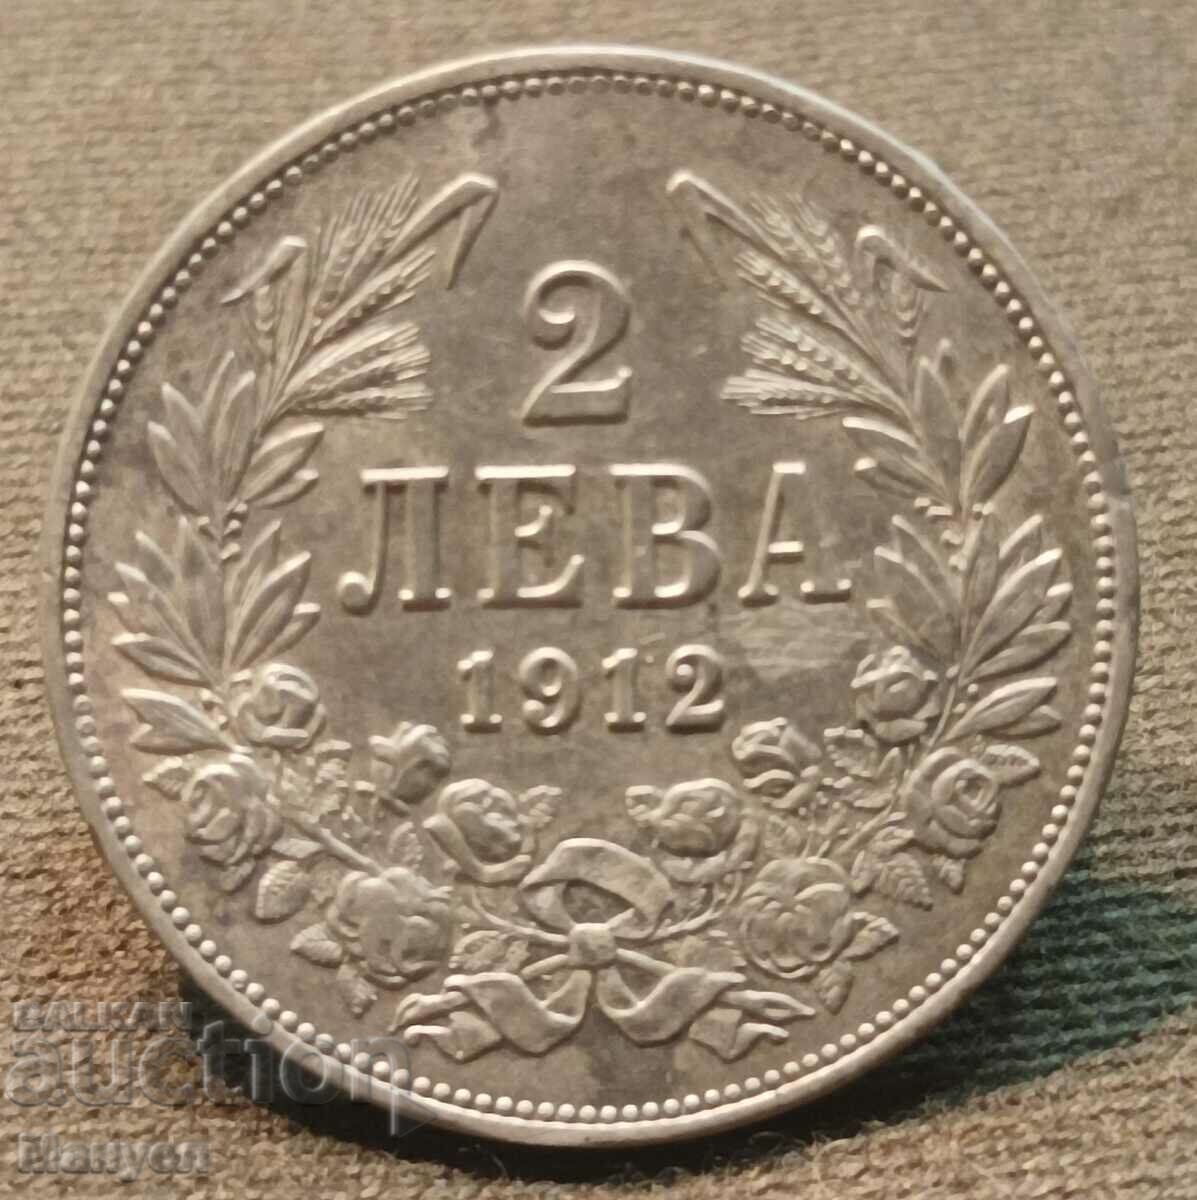 2 leva silver 1912